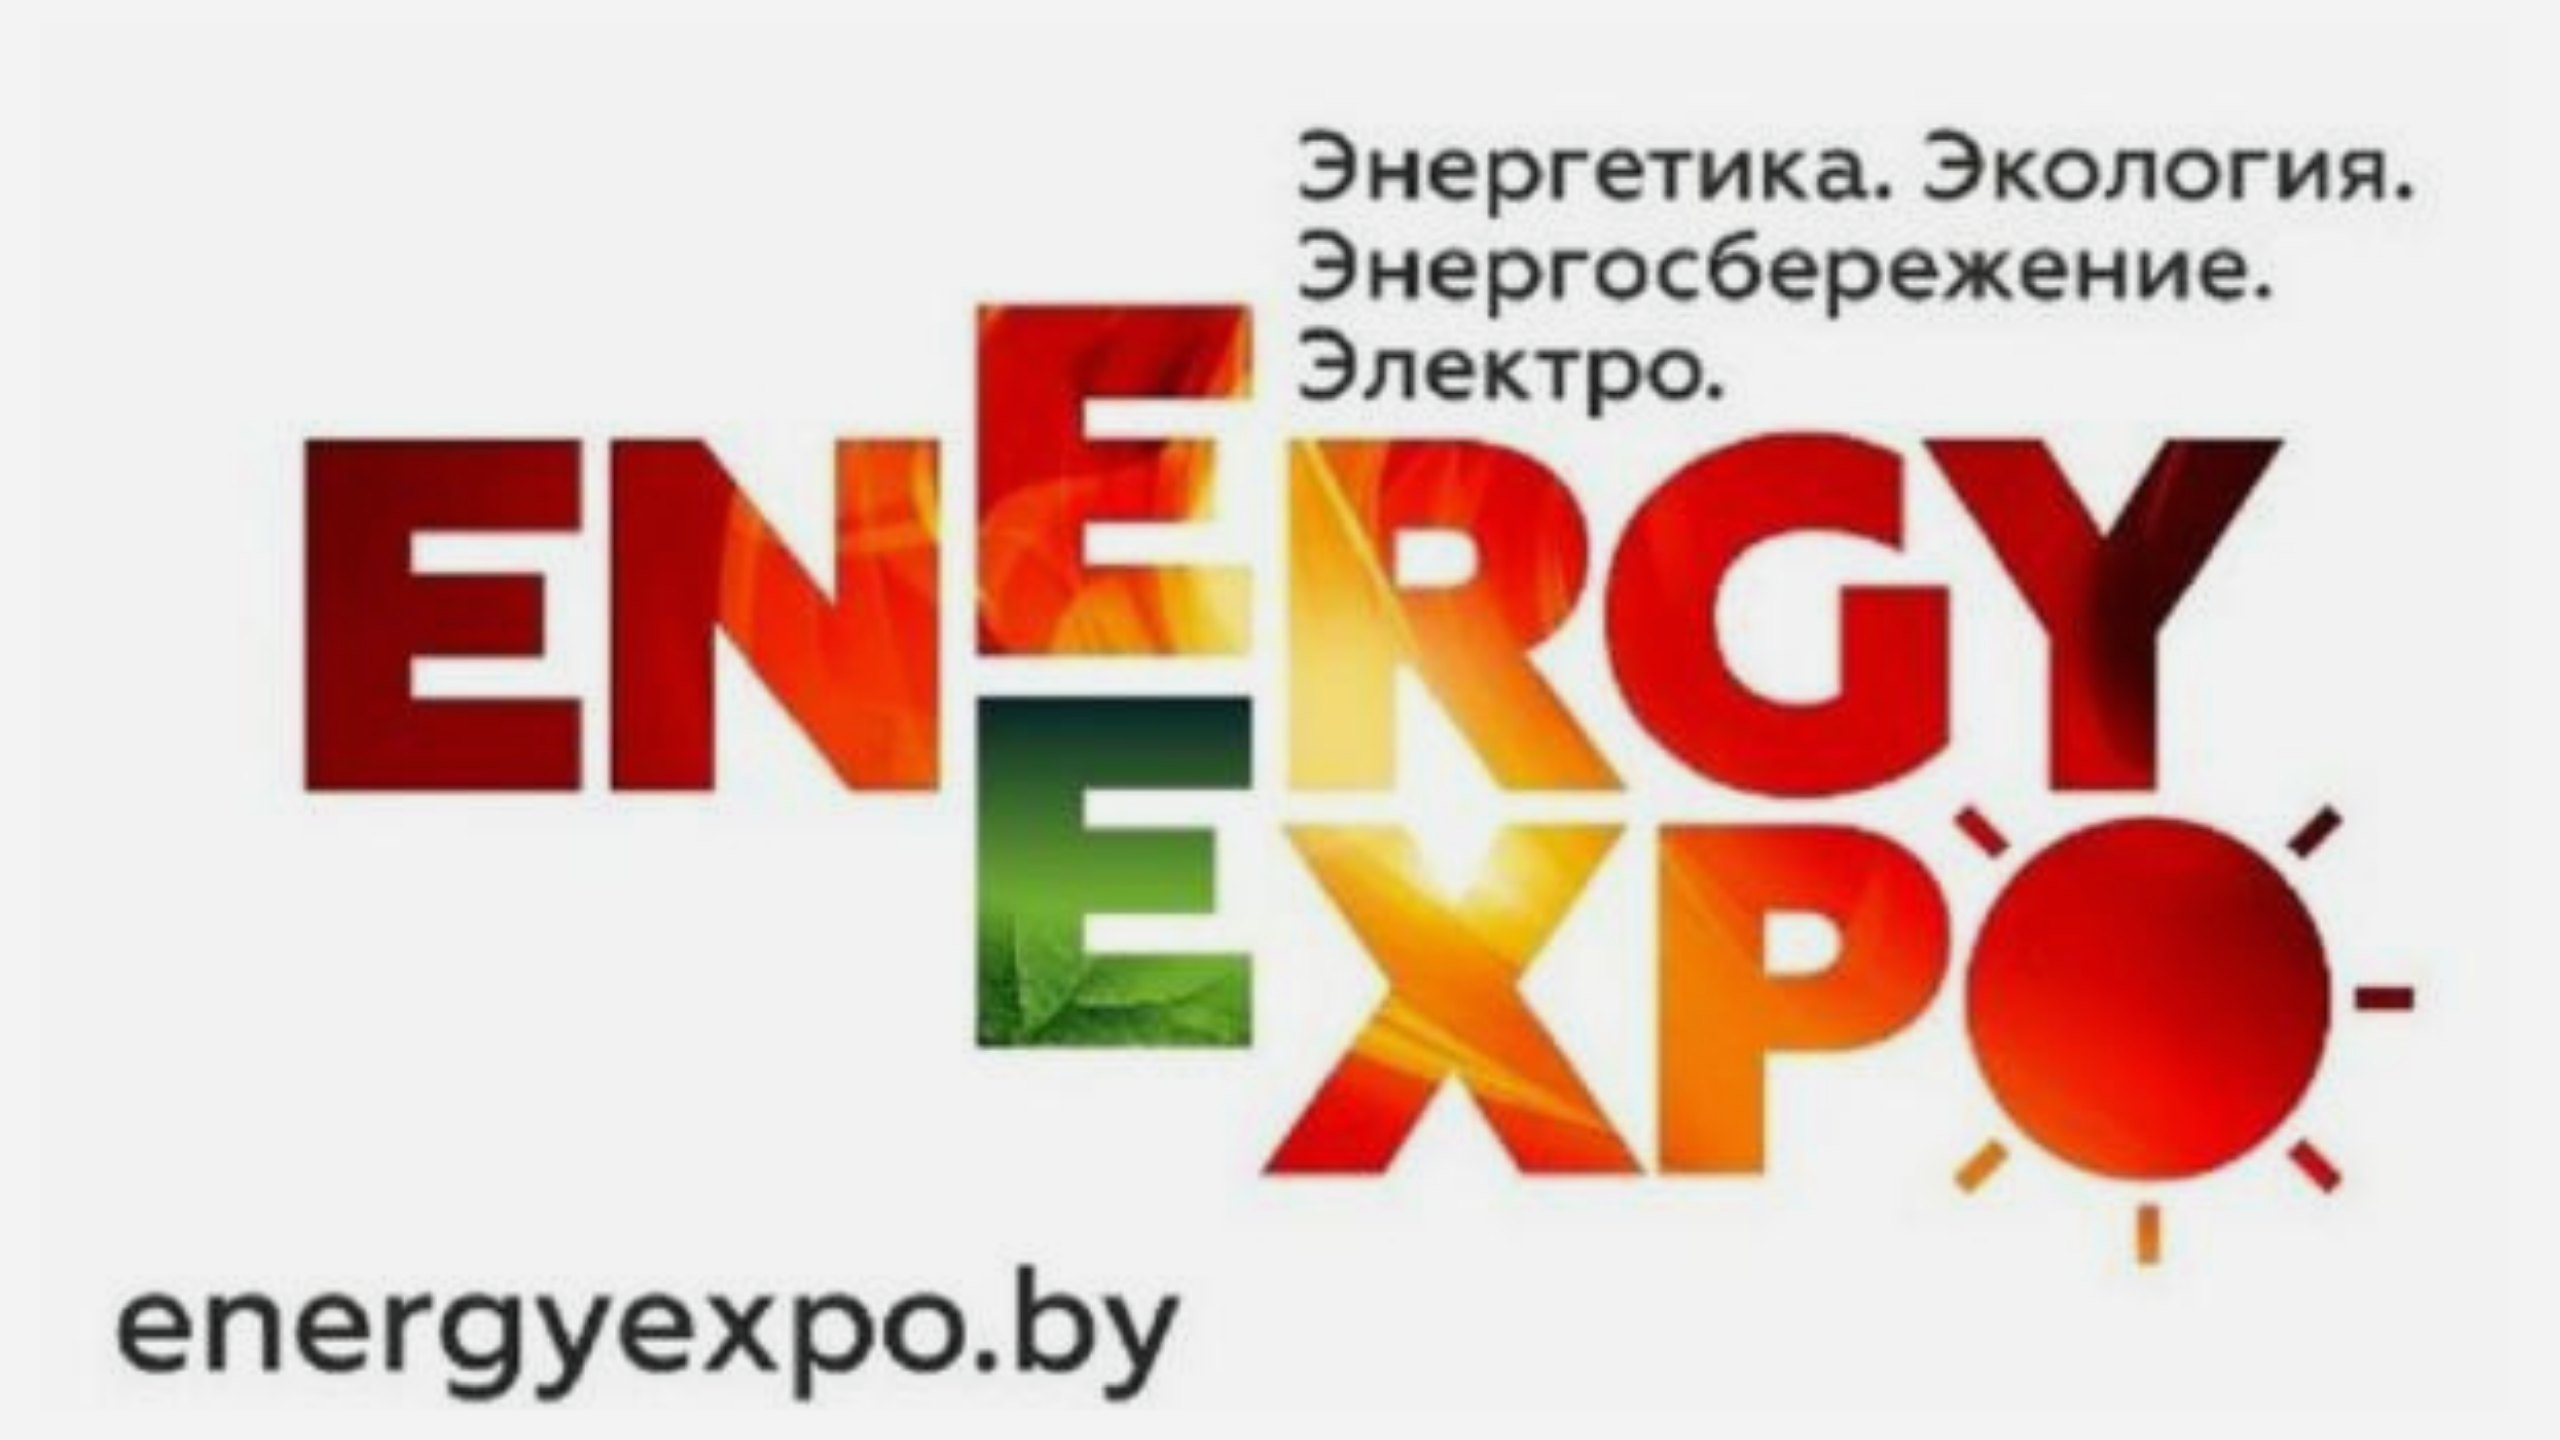 Белорусский энергетический и экологический форум «Energy Expo» пройдет в Минске 17-20 октября